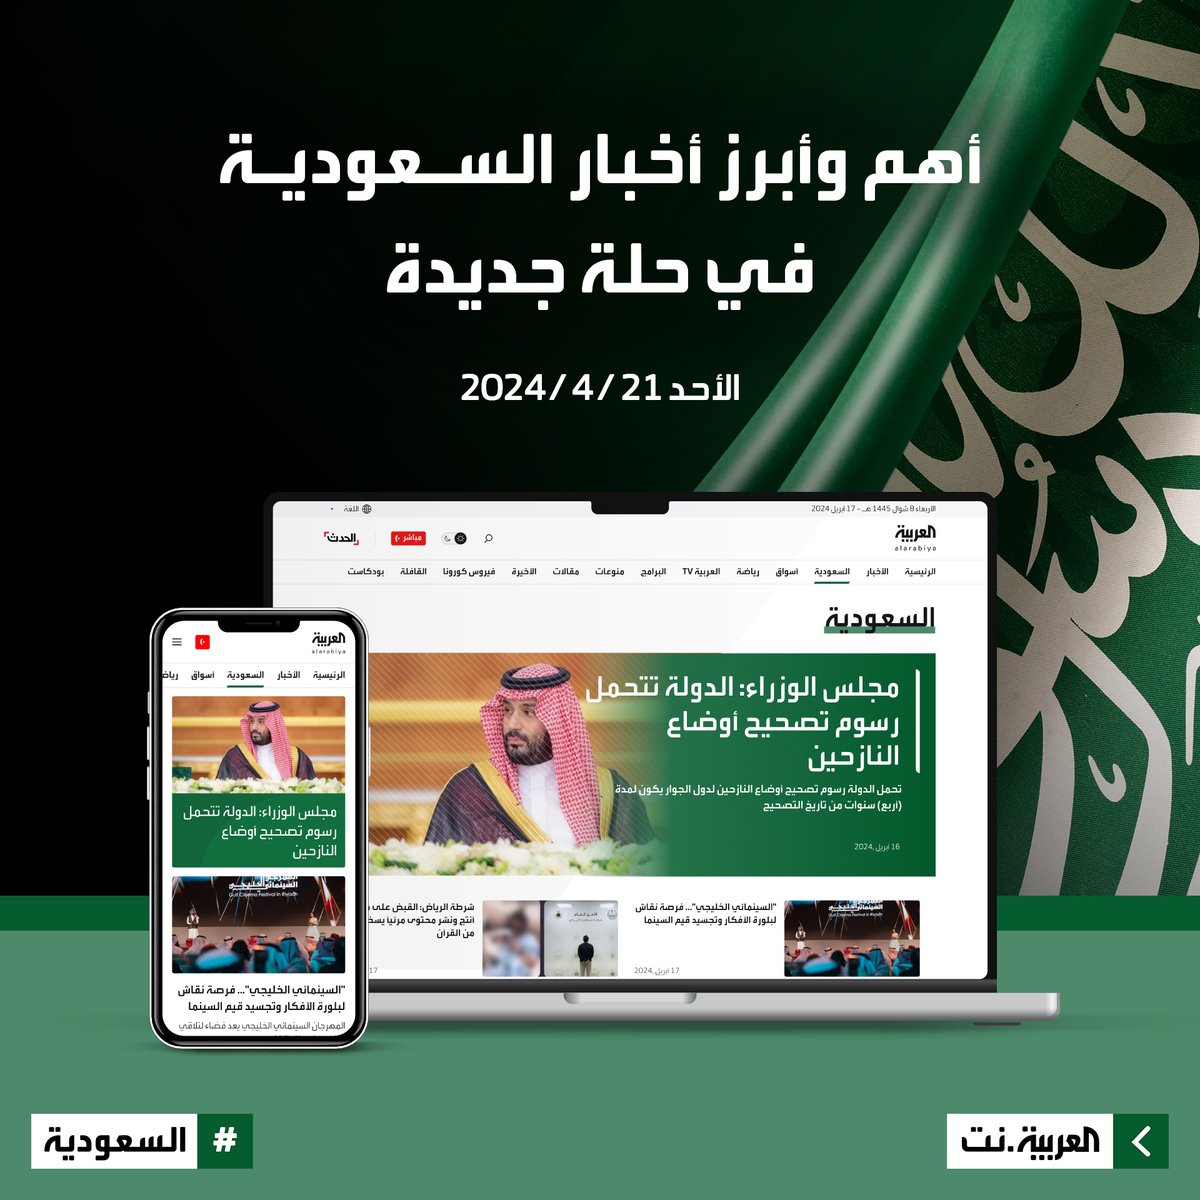 الأحد المقبل.. أهم وأبرز أخبار #السعودية على #العربية_نت في حلة جديدة.. ترقبونا alarabiya.net/saudi-today